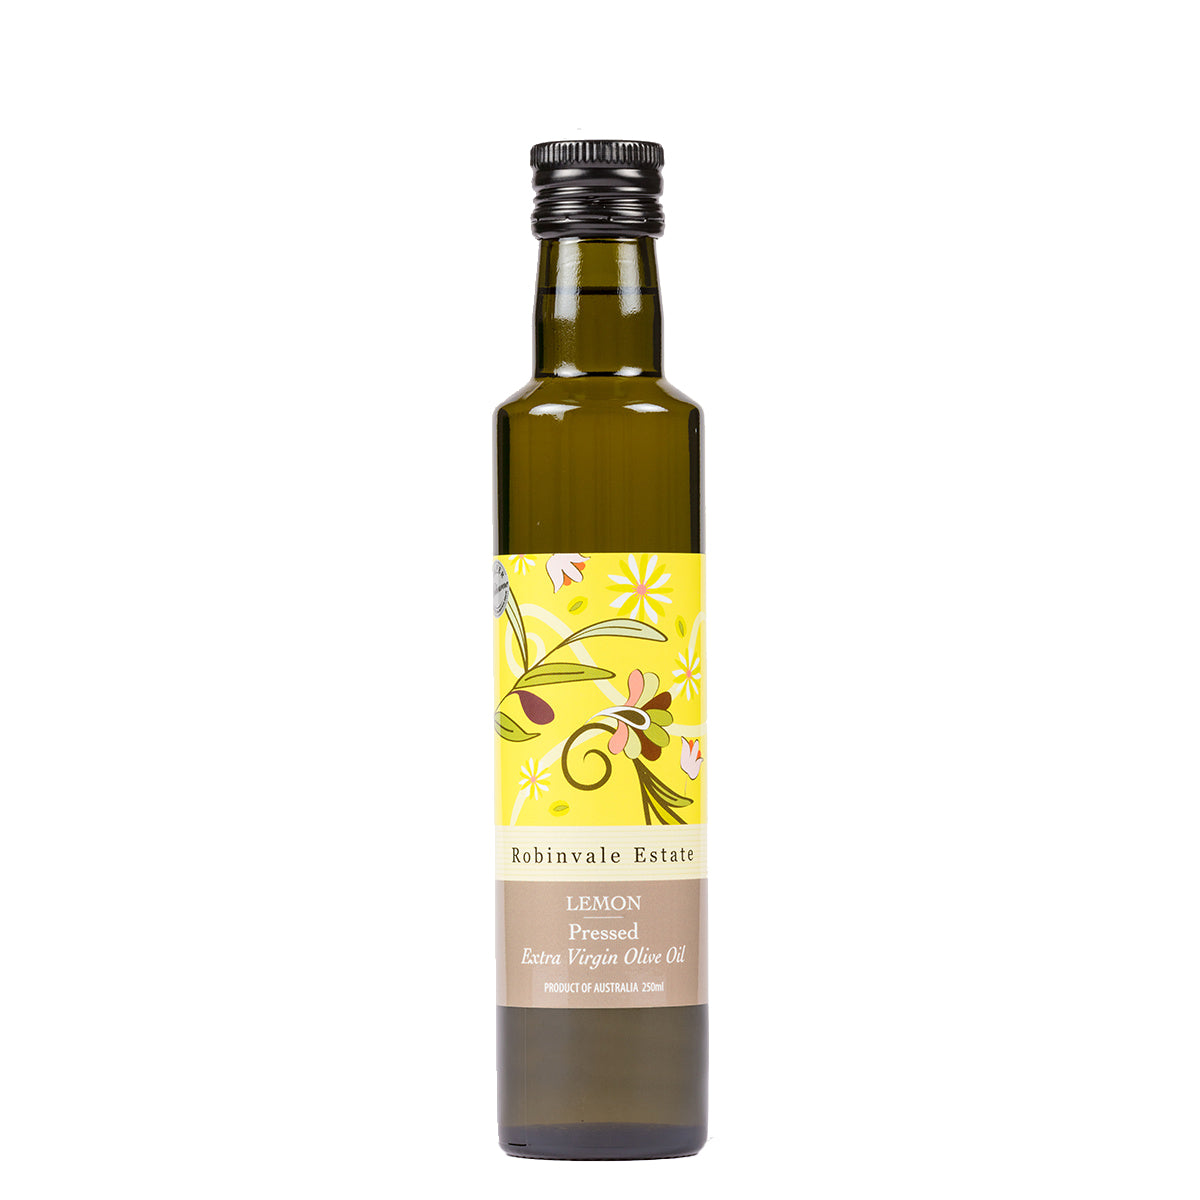 Agrumato Lemon Olive Oil